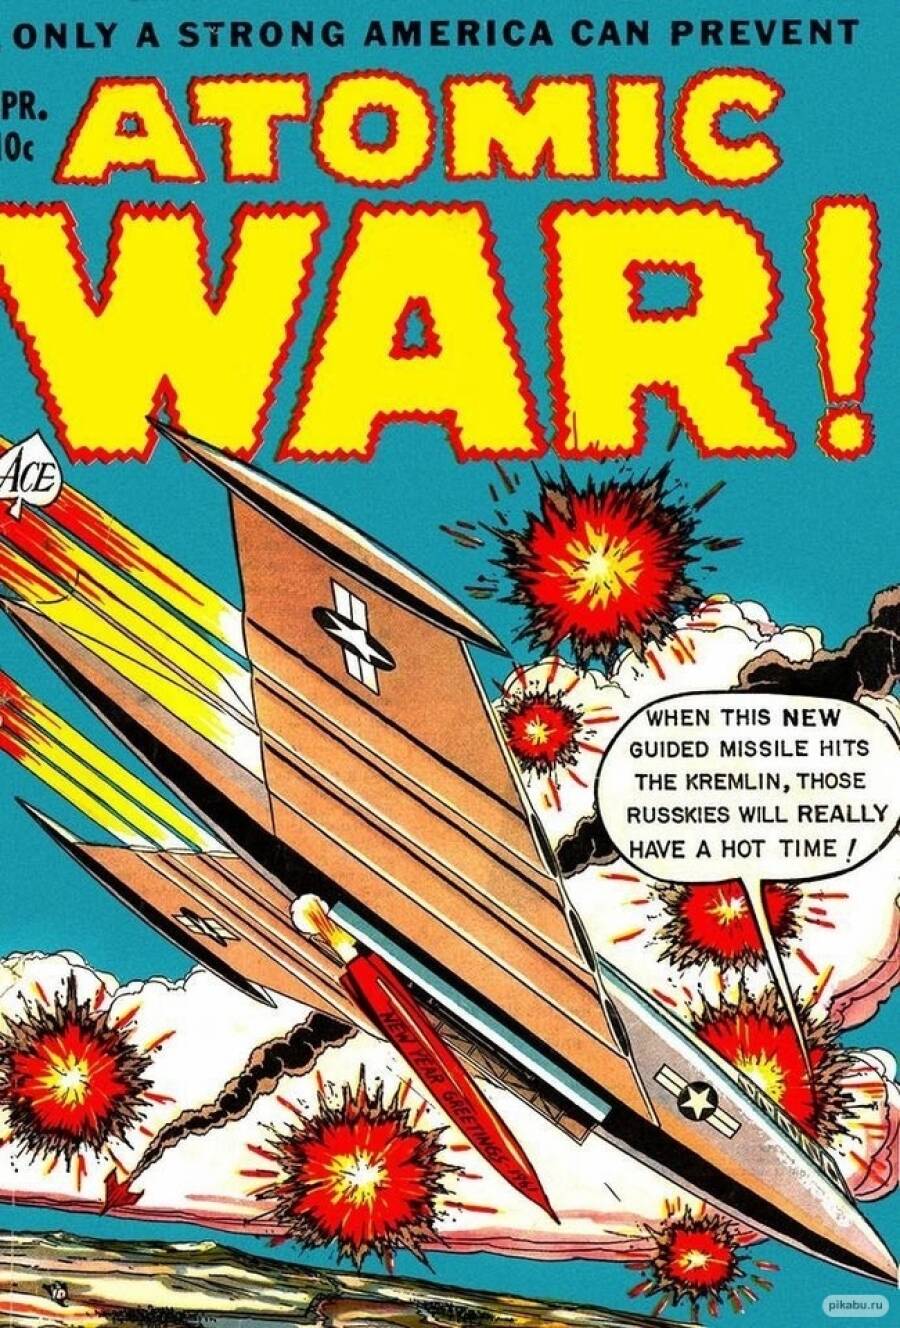 Комиксы «Атомная война», в которых США сбрасывают бомбы на СССР раскупались очень неплохо. 